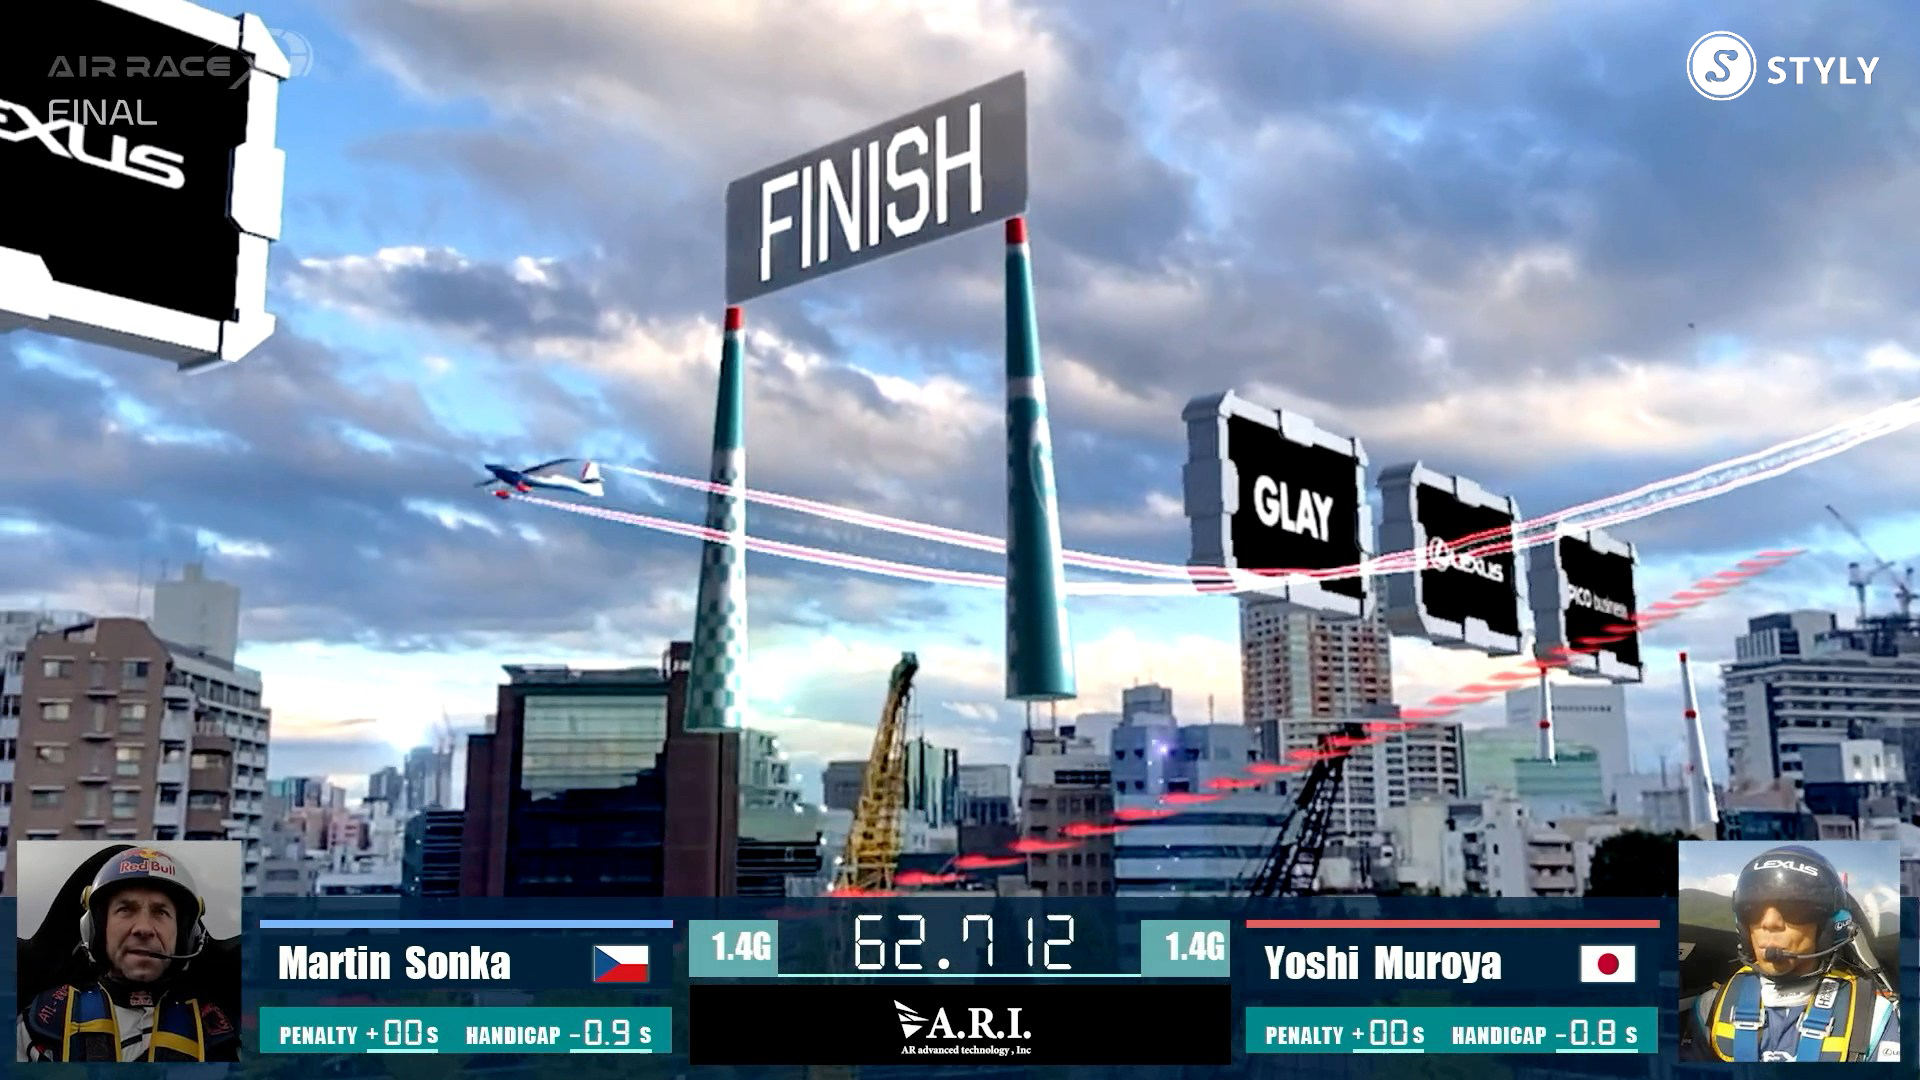 世界初*の都市型XRスポーツ「AIR RACE X」がSPORTS INNOVATION STUDIO コンテスト「パイオニア賞」を受賞 - 一般社団法人渋谷未来デザイン